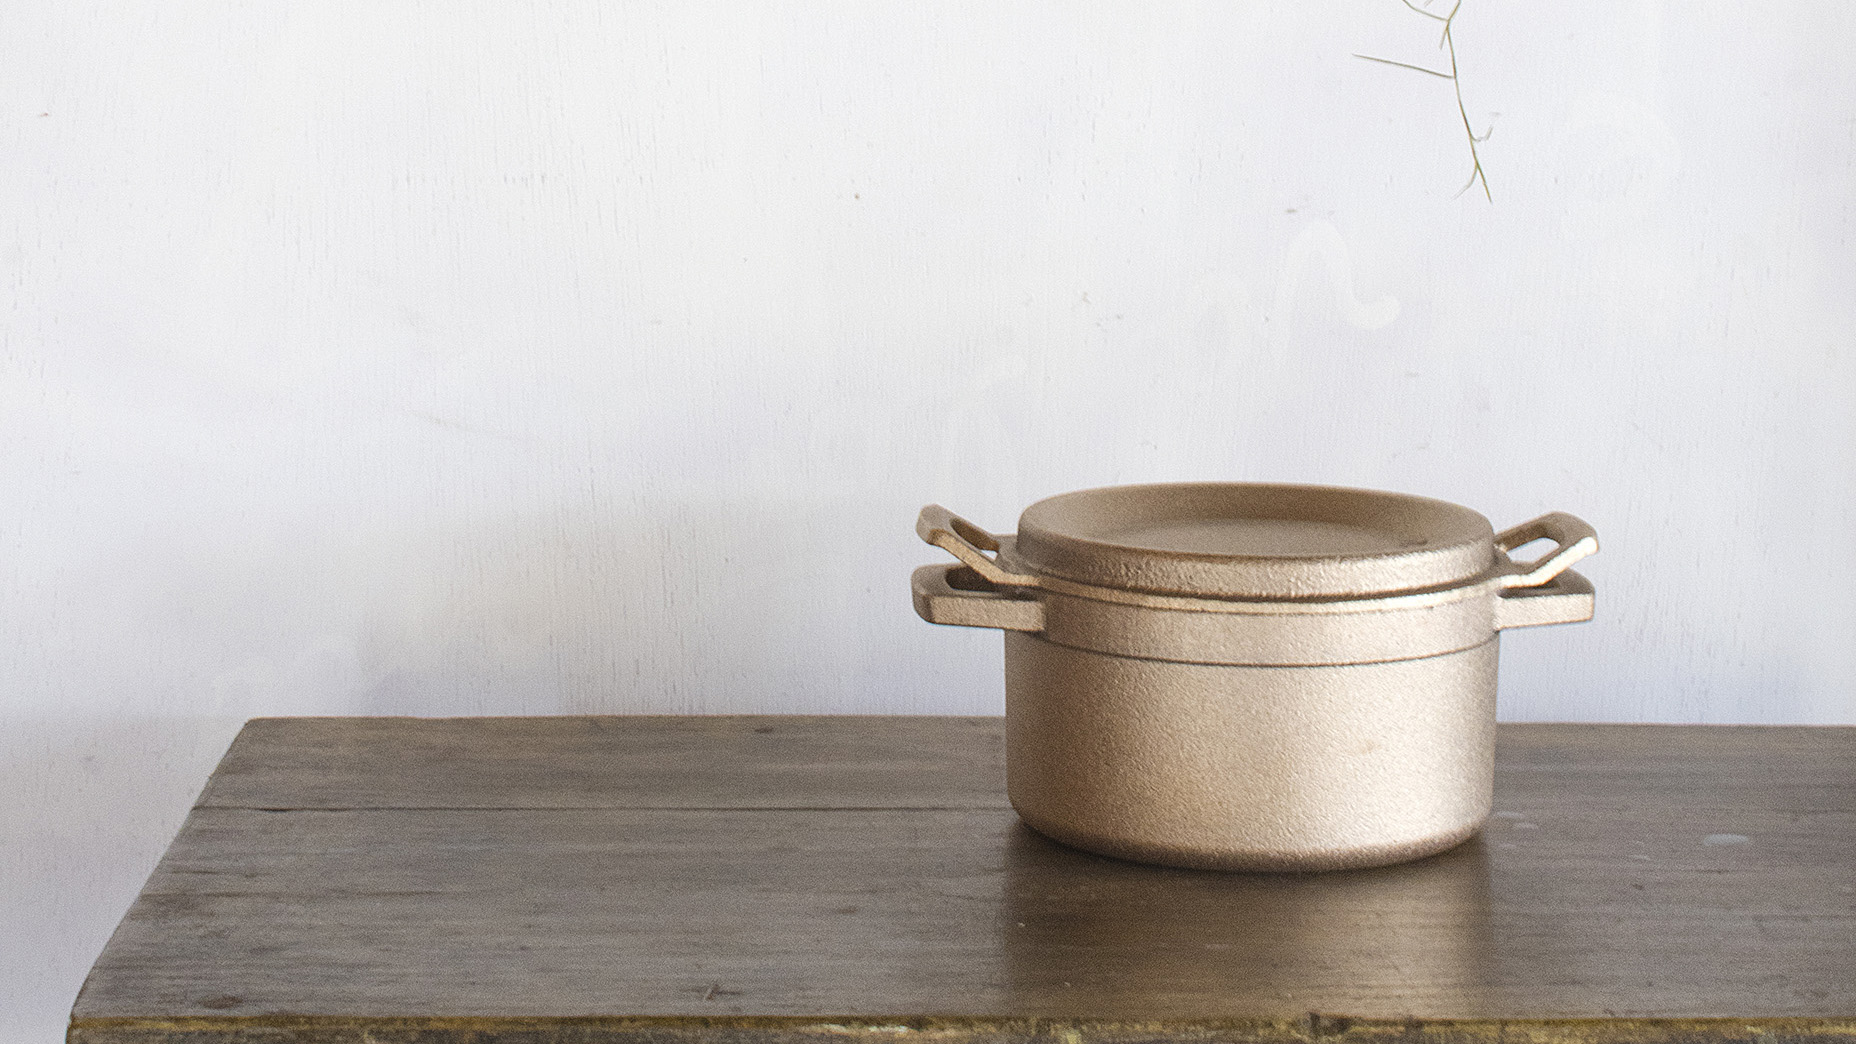 銅鍋の美しい外観─ キッチンに華やかさを与える存在